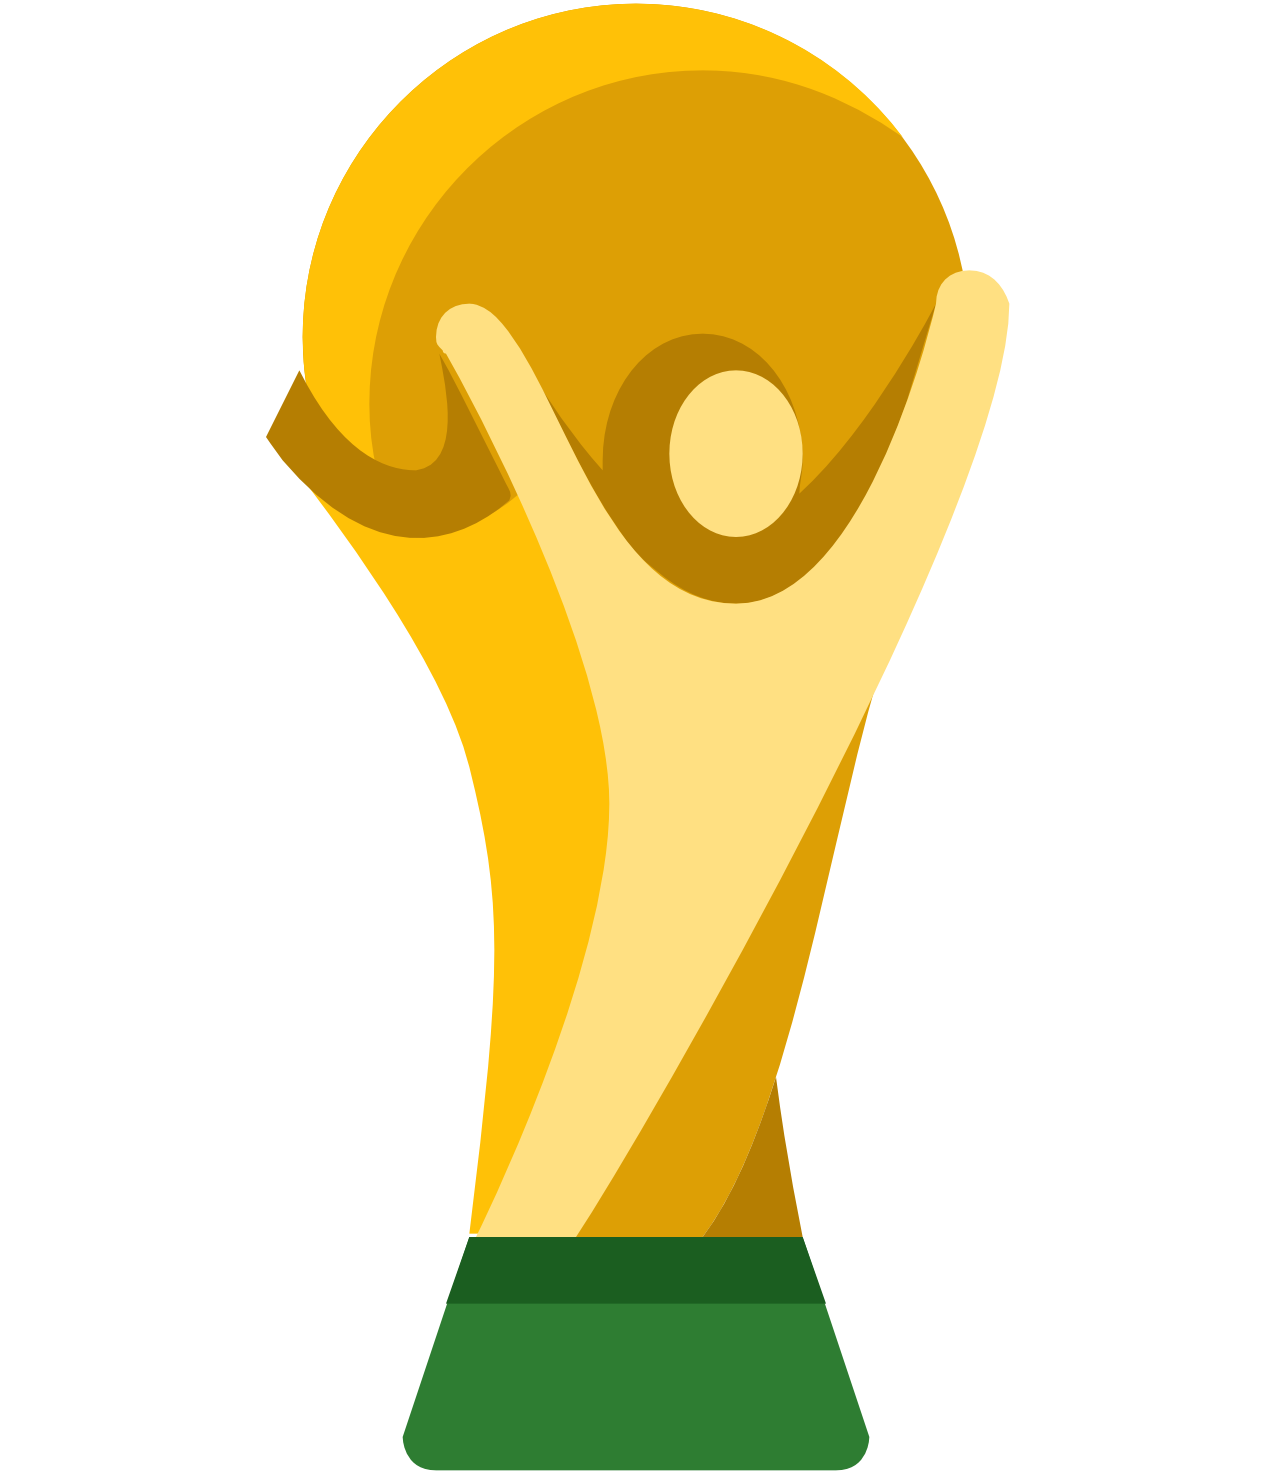 Qualificação Copa do Mundo, America do Norte e Central da Mundo